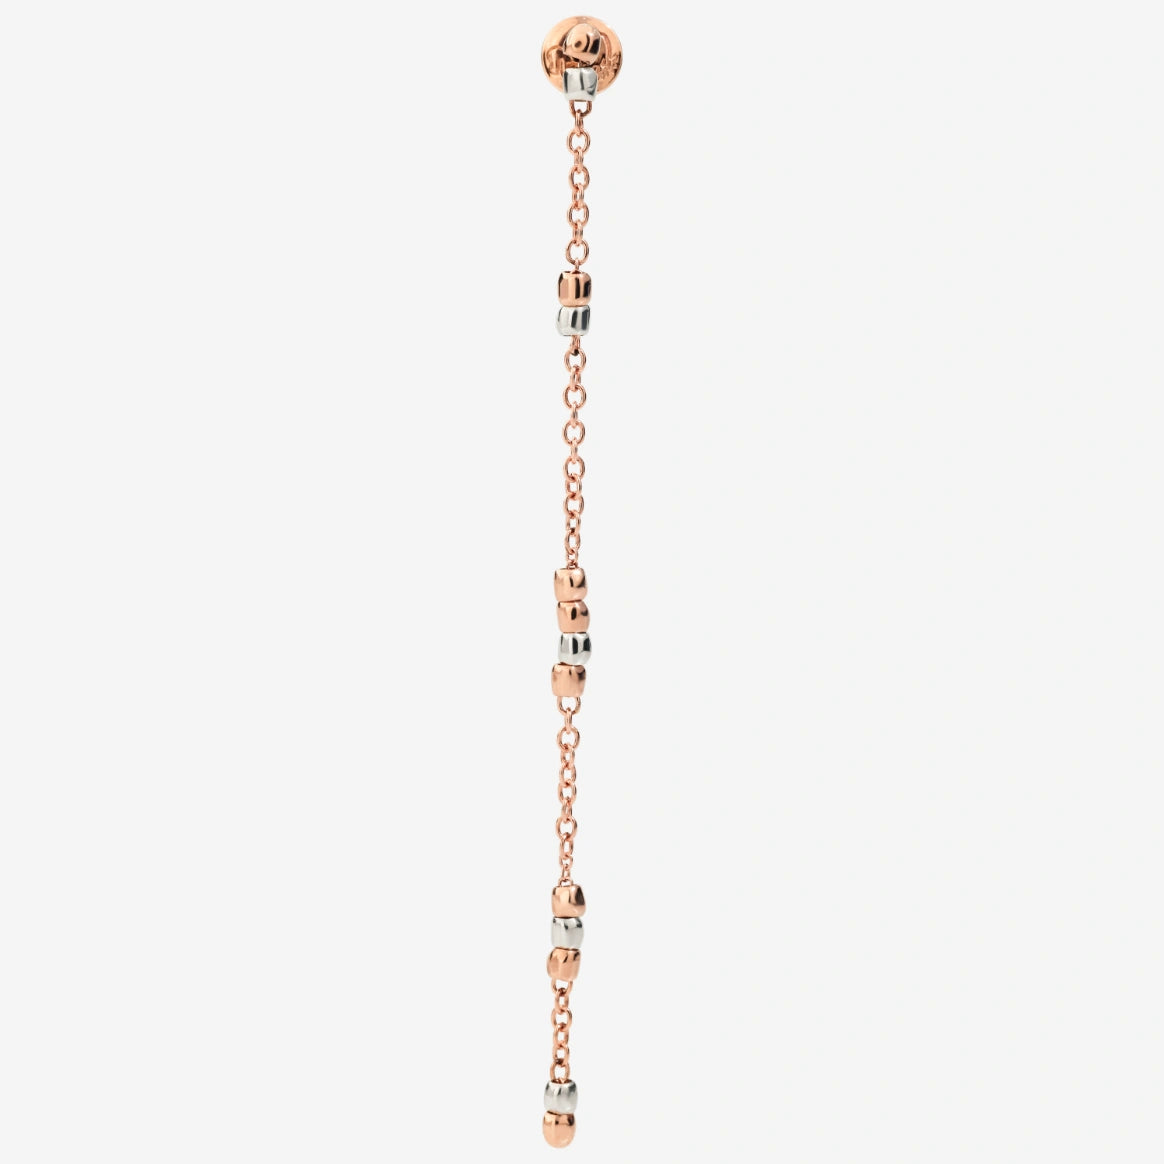 DoDo GRANELLI Mini Granelli Pendant Earrings in Rose Gold and Silver - Orsini Jewellers